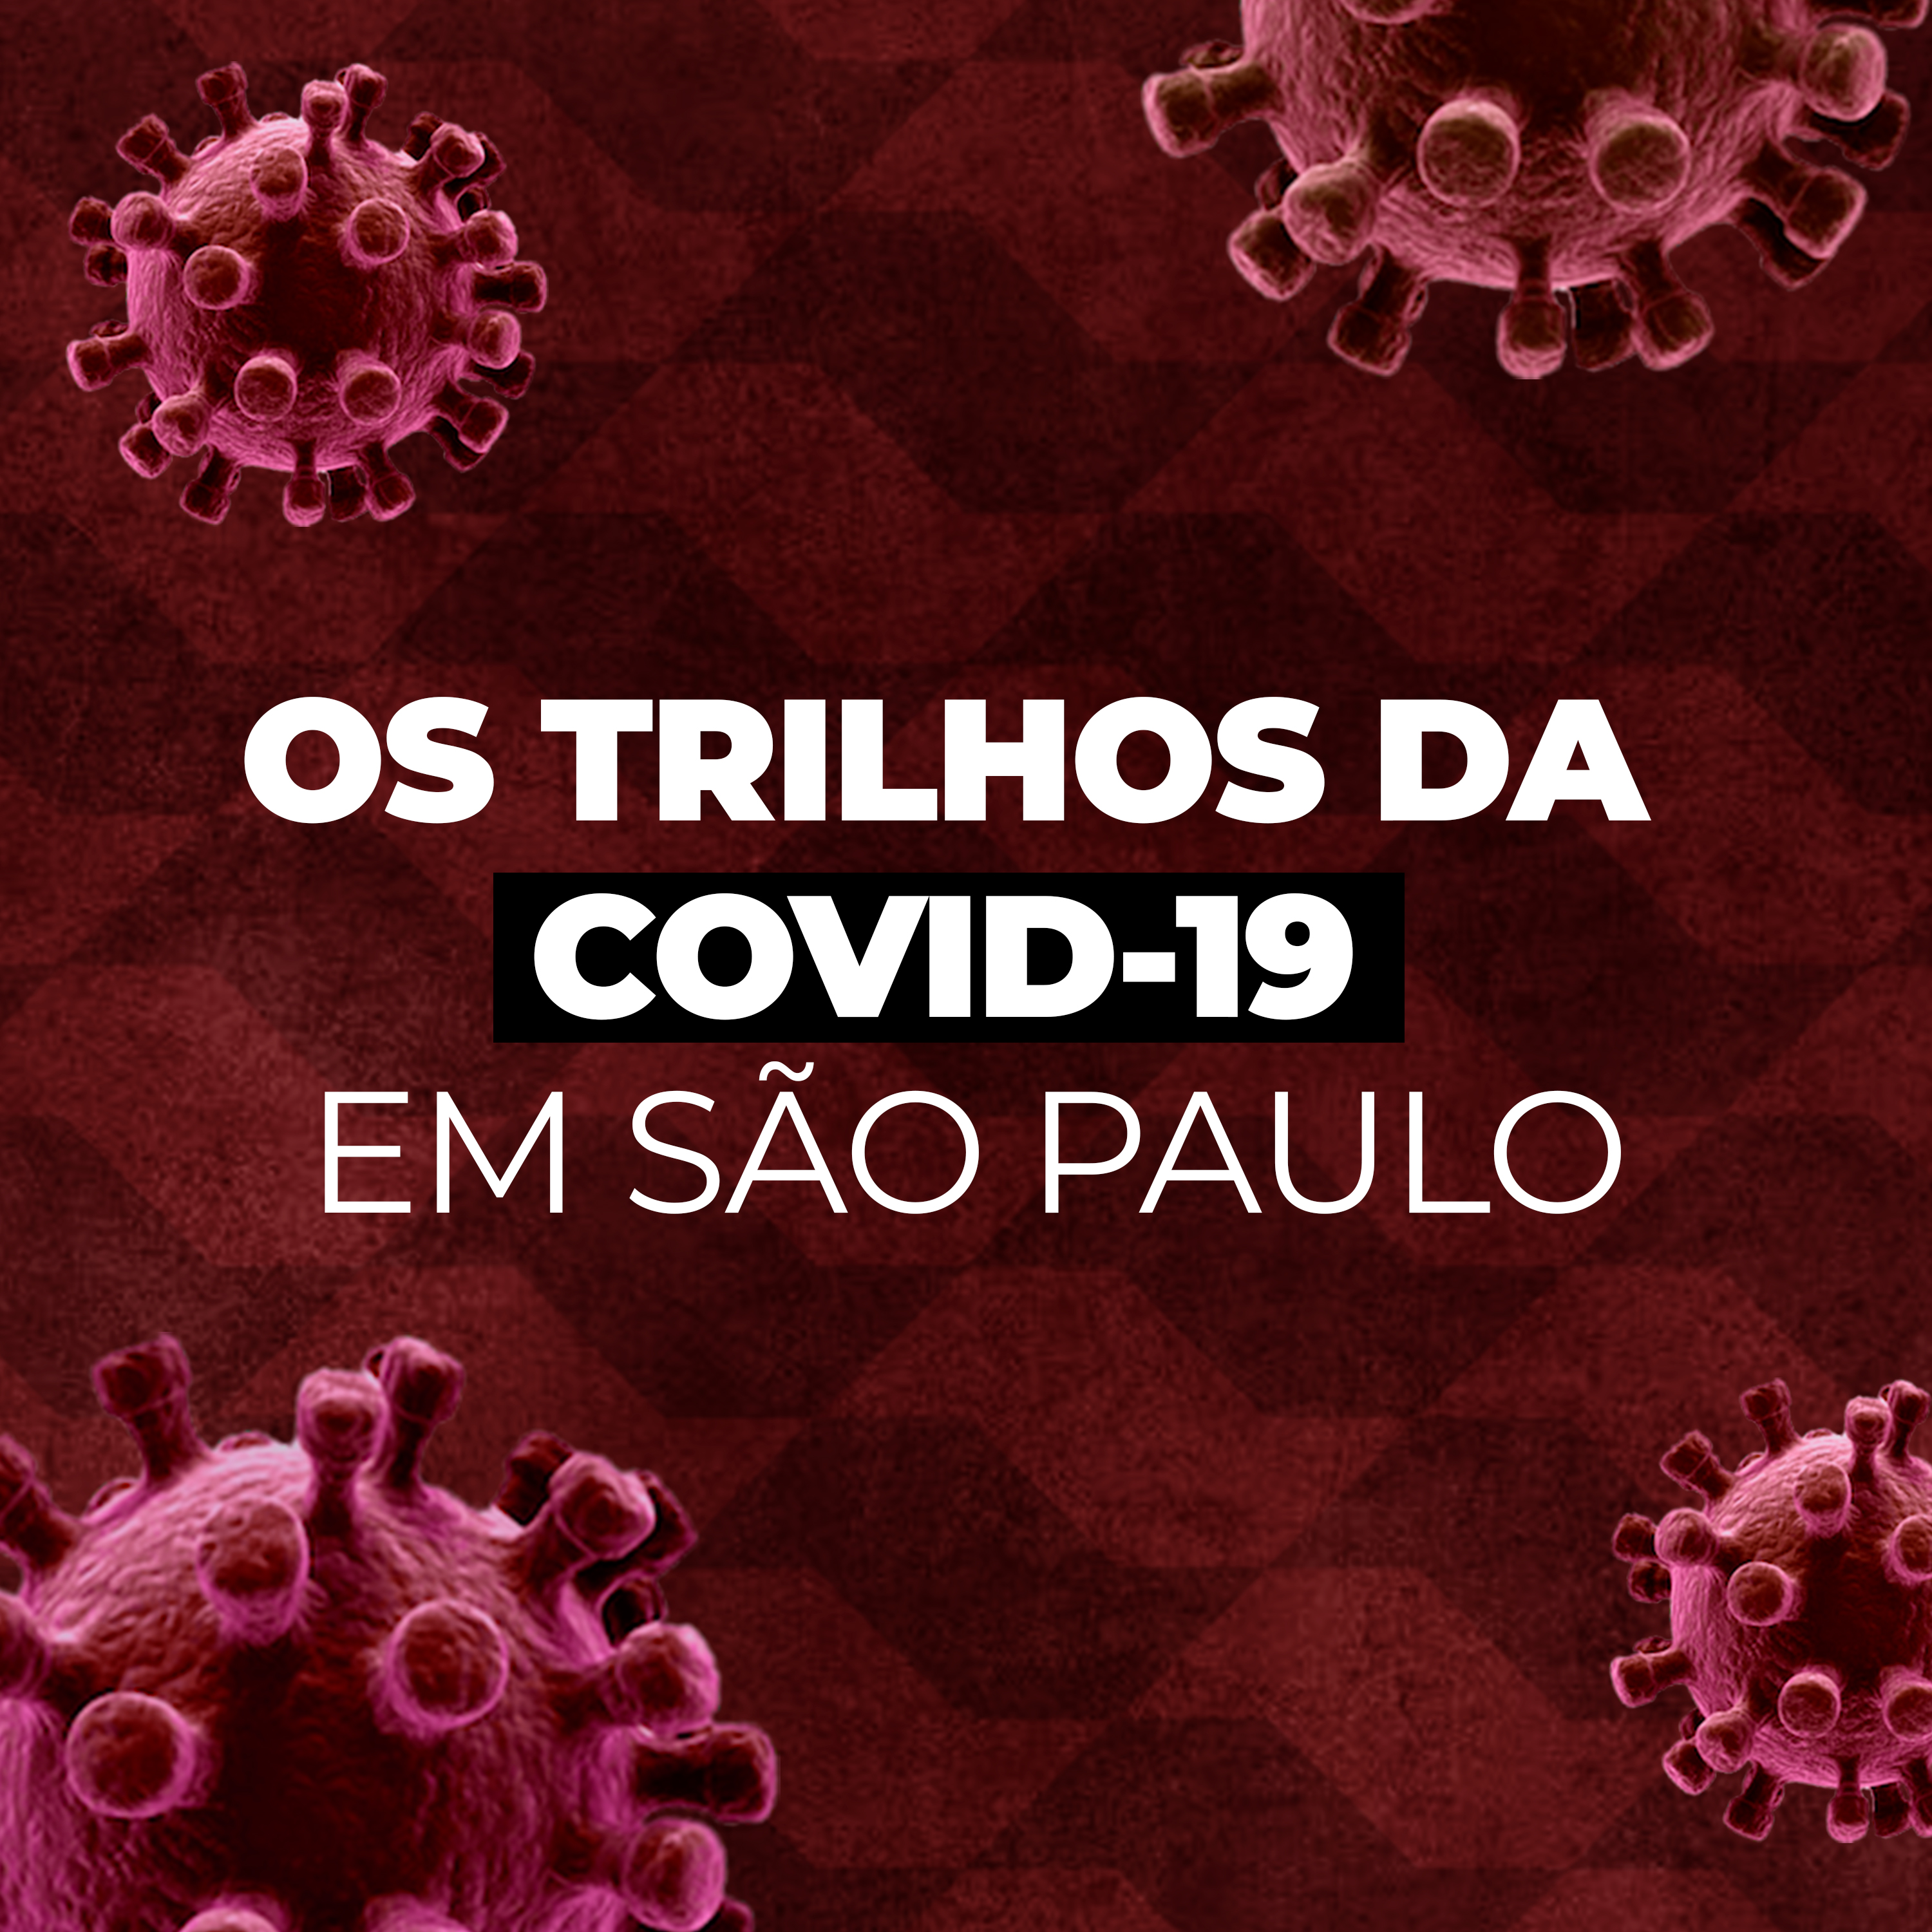 Os trilhos da Covid-19 em São Paulo